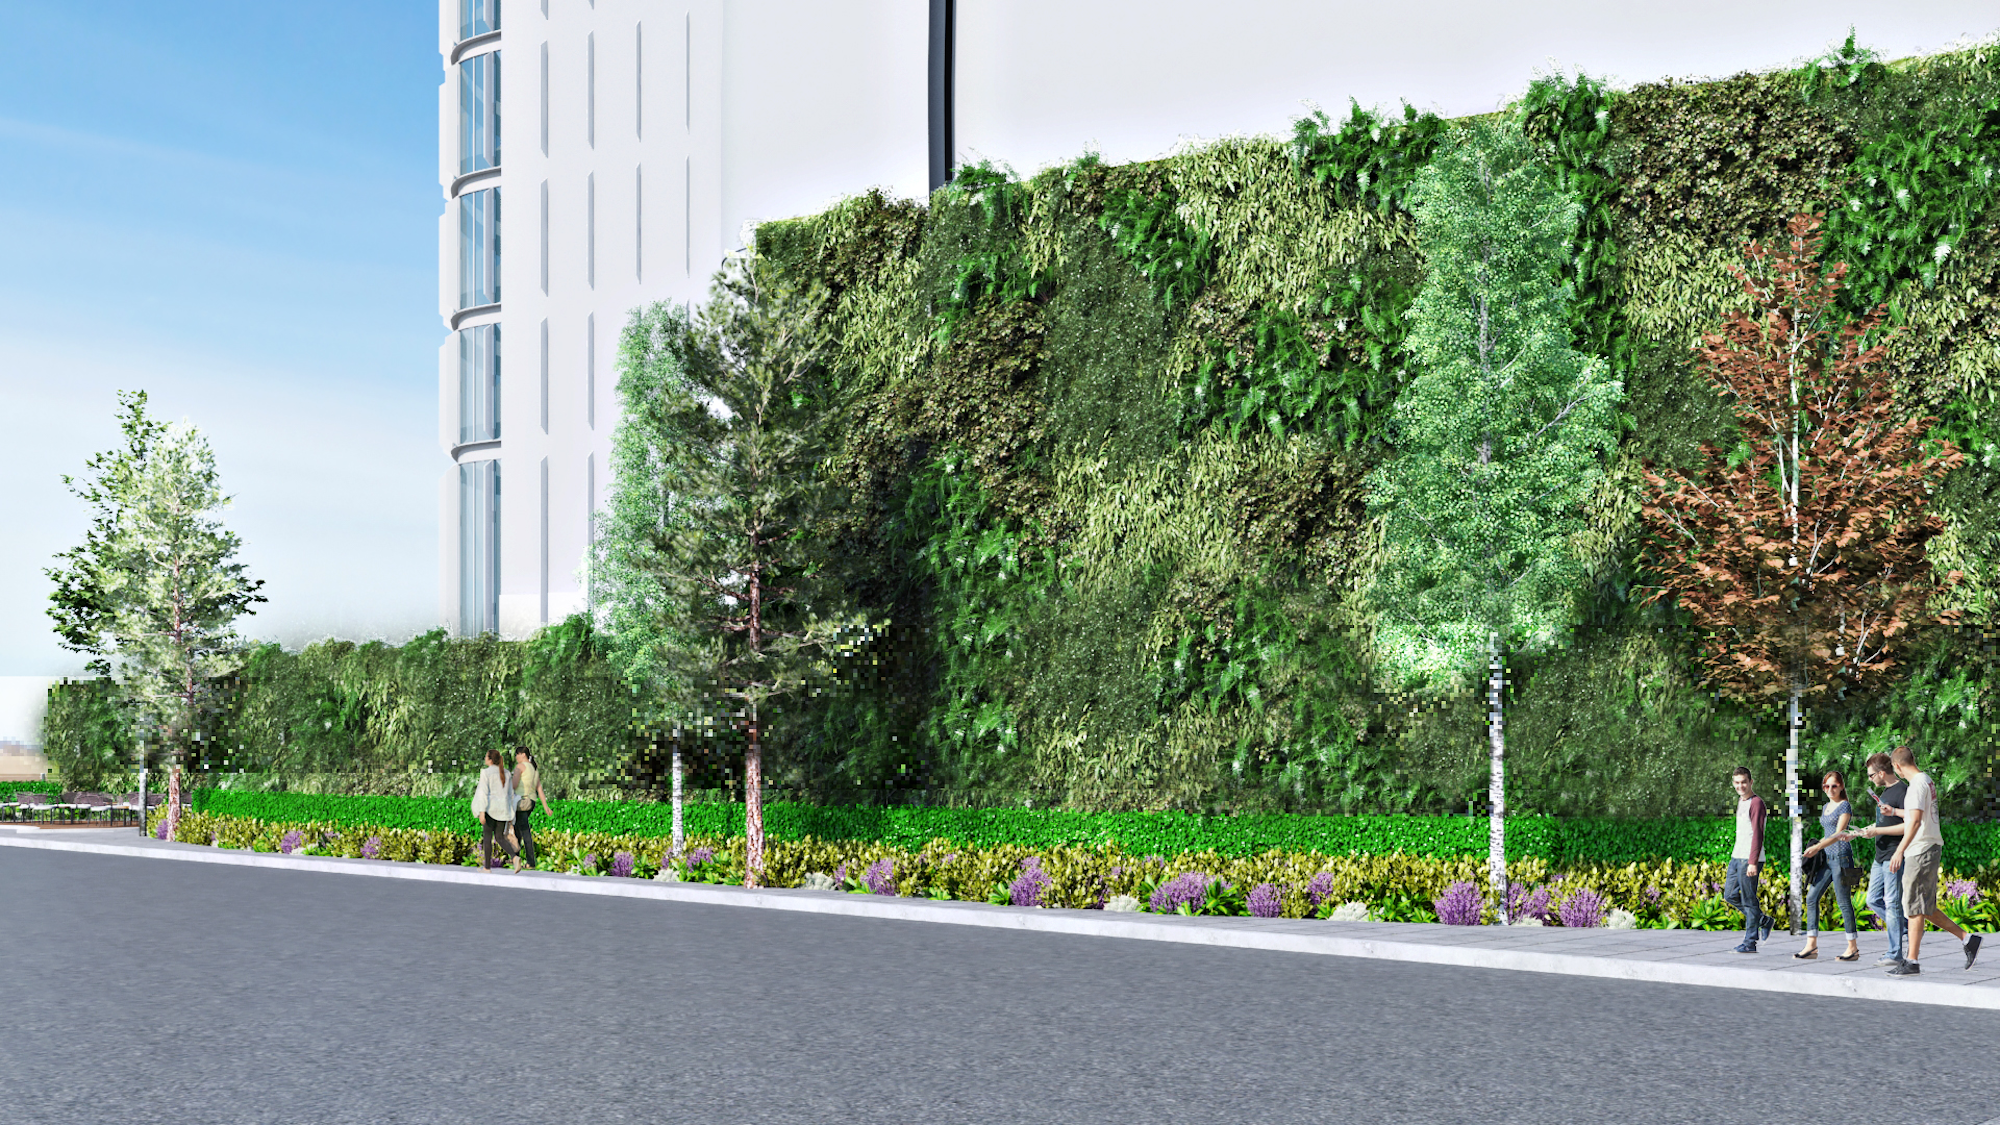 3D-Darstellung eines Bürgersteigs und Geschäftsgebäudes mit grünen Wänden, Bäumen und Bodenbepflanzung oder Landschaftsgestaltung